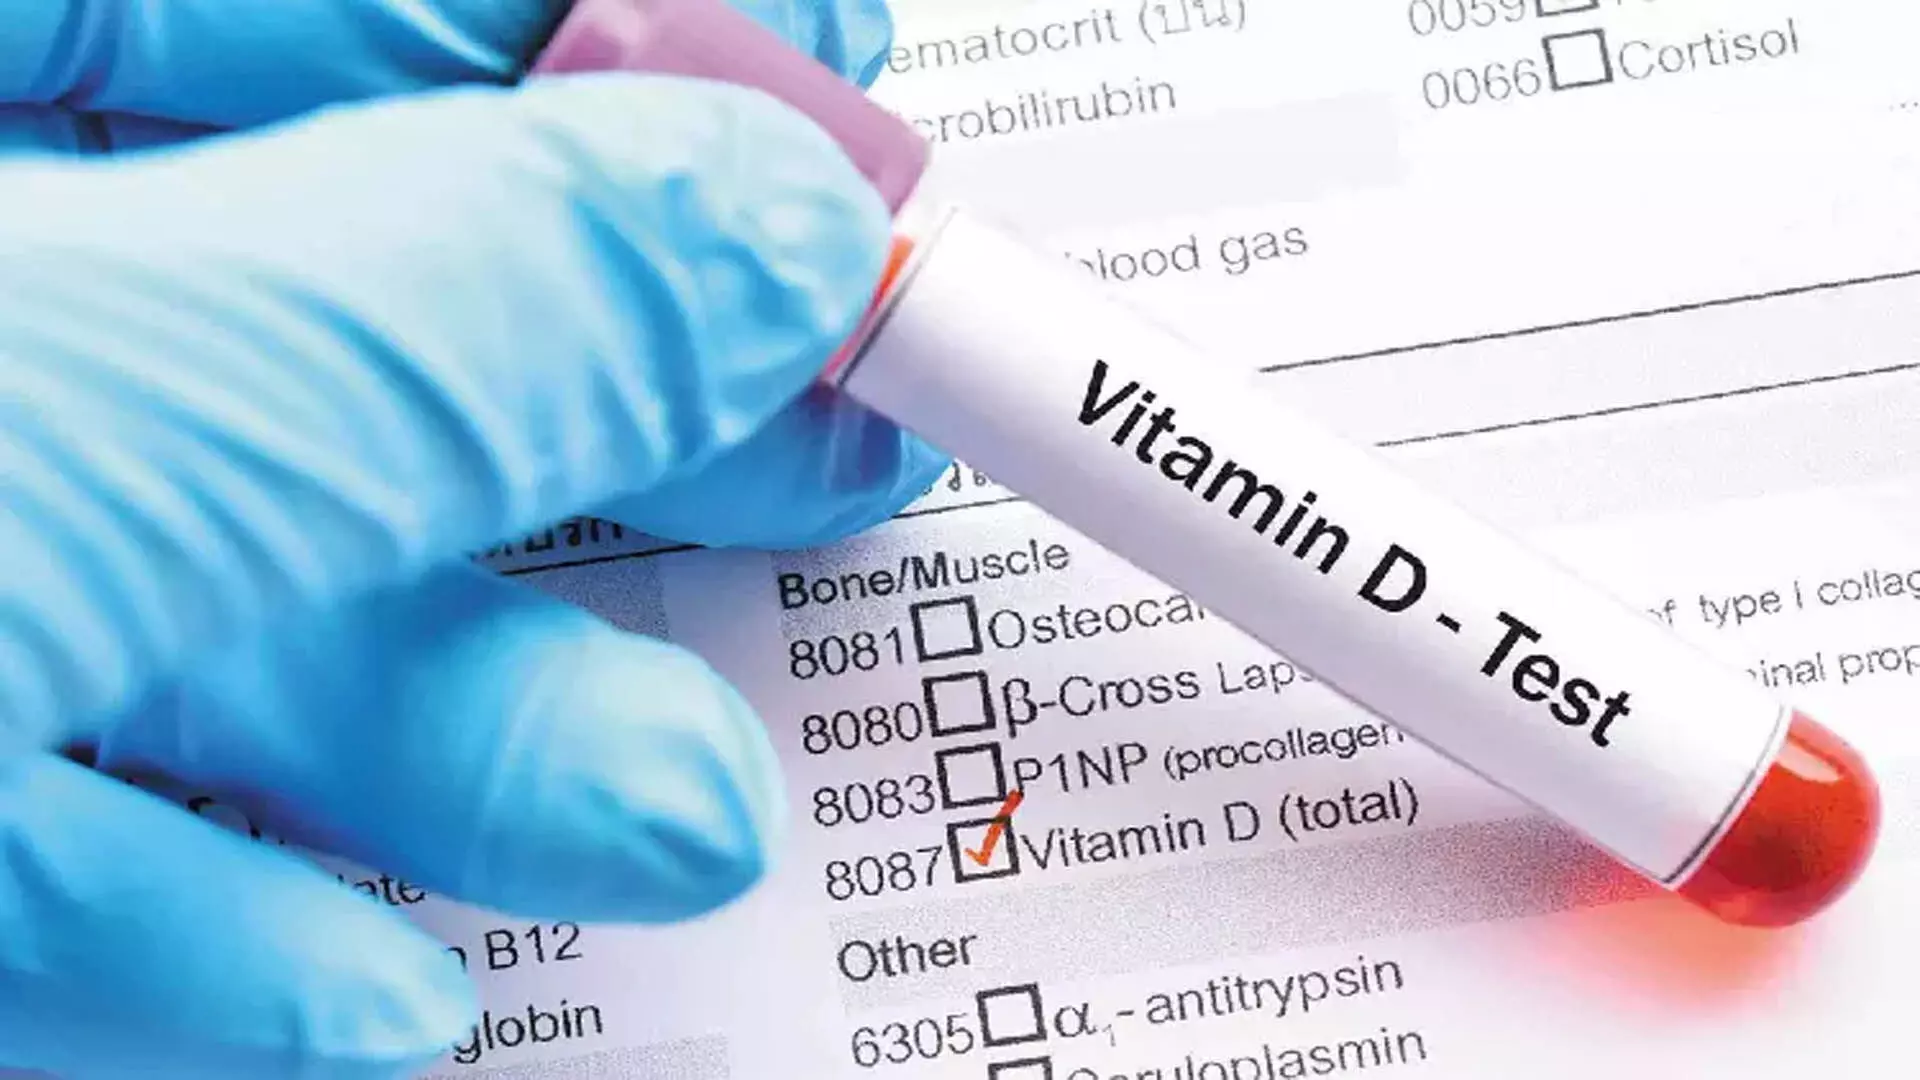 Vitamin D कोई स्क्रीनिंग टेस्ट नहीं है, इसकी नियमित जांच की जरूरत नहीं- डॉक्टर